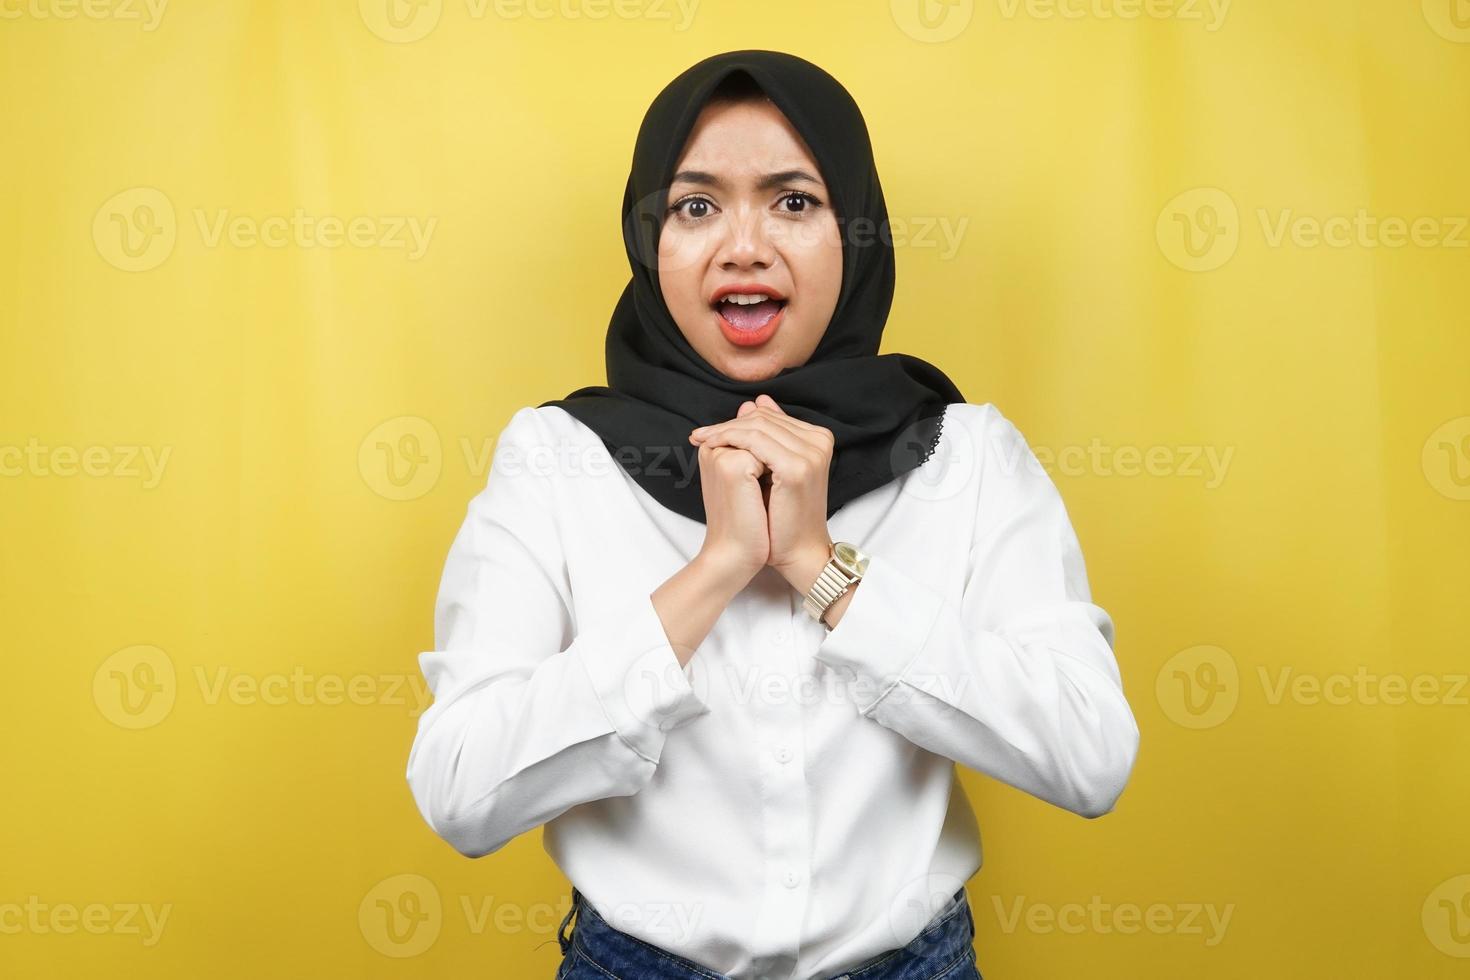 Hermosa joven mujer musulmana asiática conmocionada, sorprendida, expresión guau, mano sosteniendo un teléfono inteligente con pantalla blanca o en blanco, promocionando la aplicación, promocionando el producto, presentando algo, aislado foto